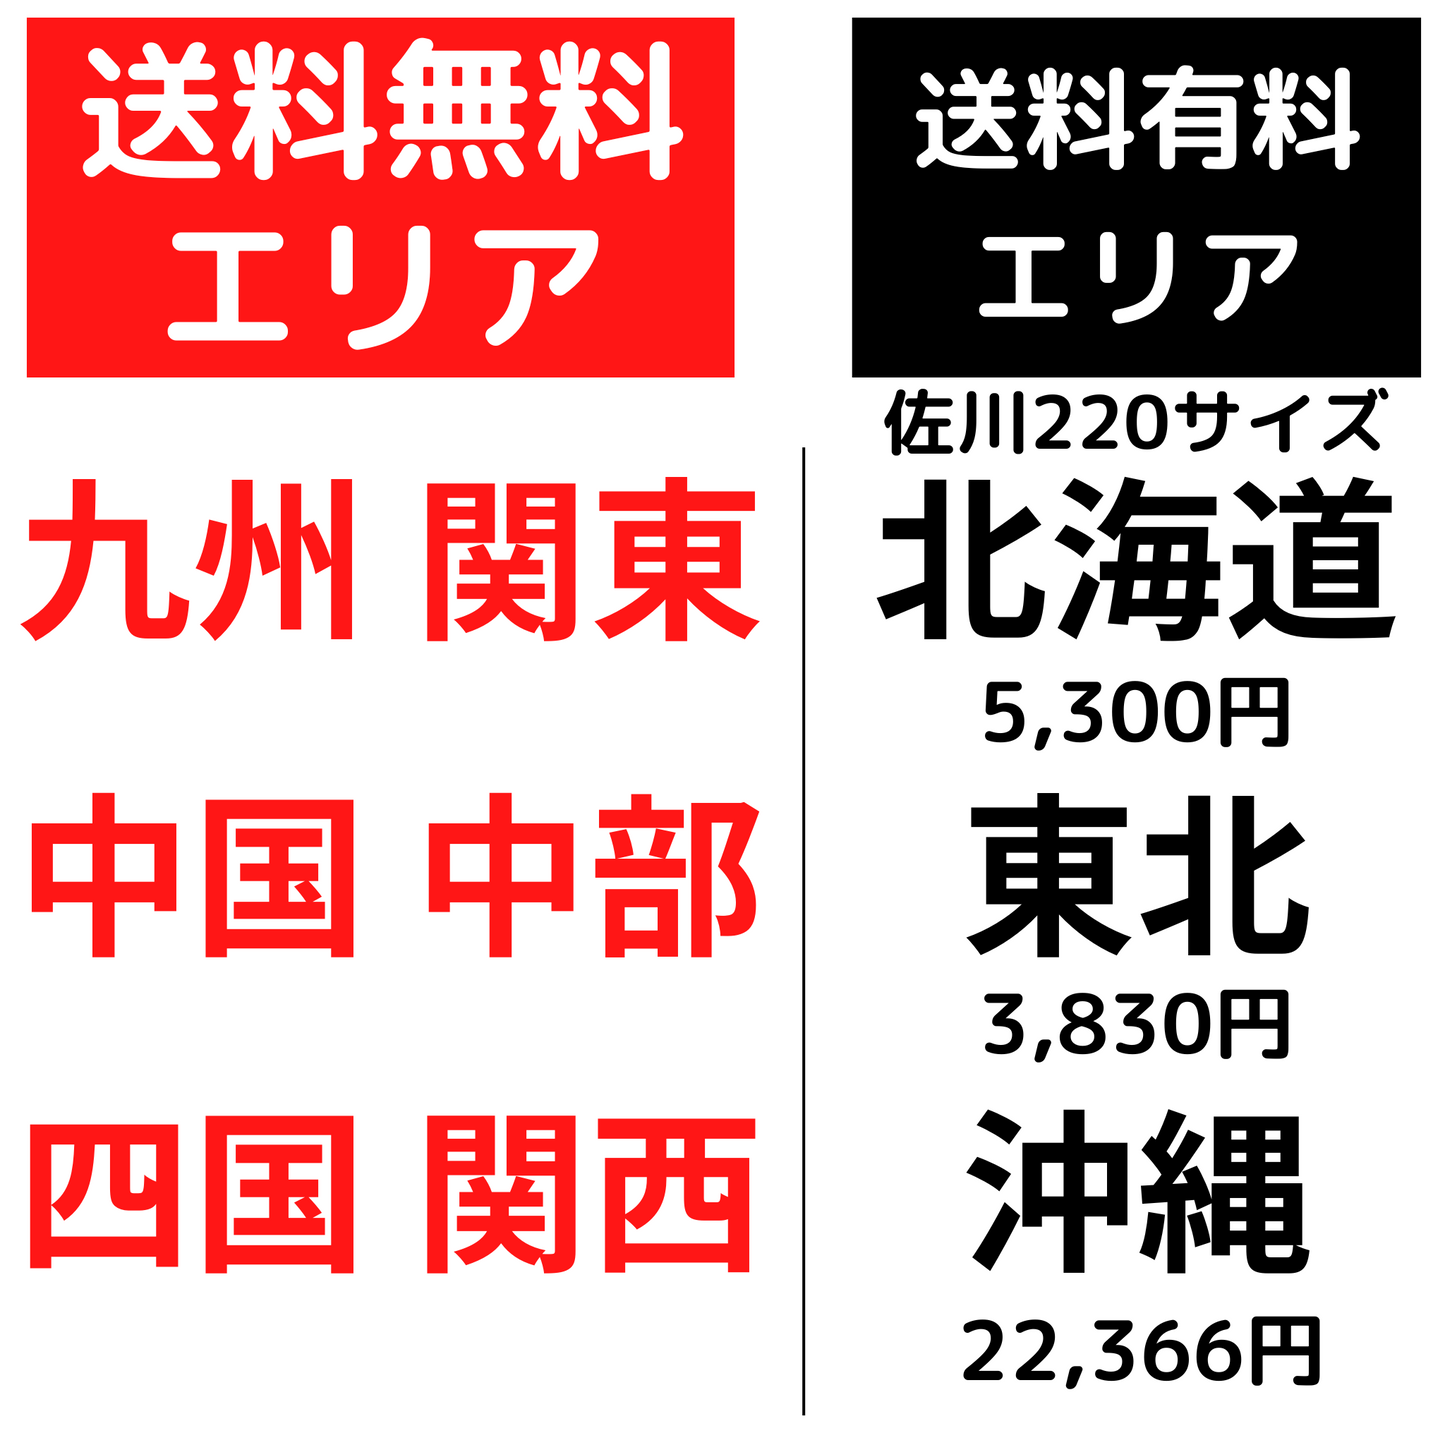 【送料無料】パブリック ミーティングチェア 4脚 キーノシリーズ スタッキングチェア レッド